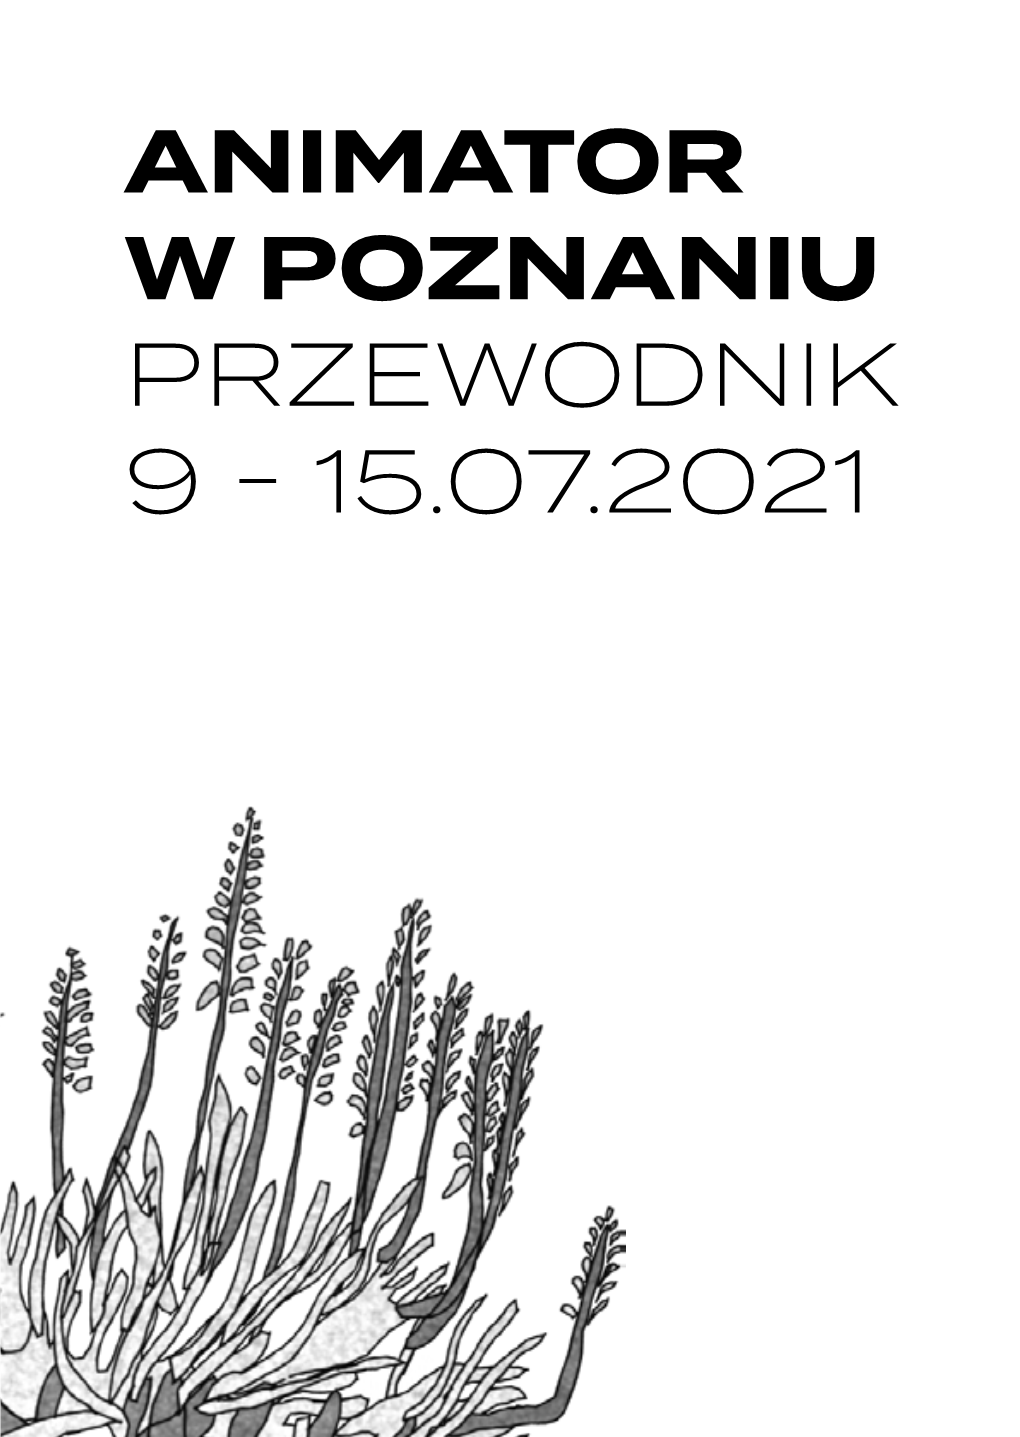 Animator W Poznaniu Przewodnik 9 - 15.07.2021 CZEŚĆ!